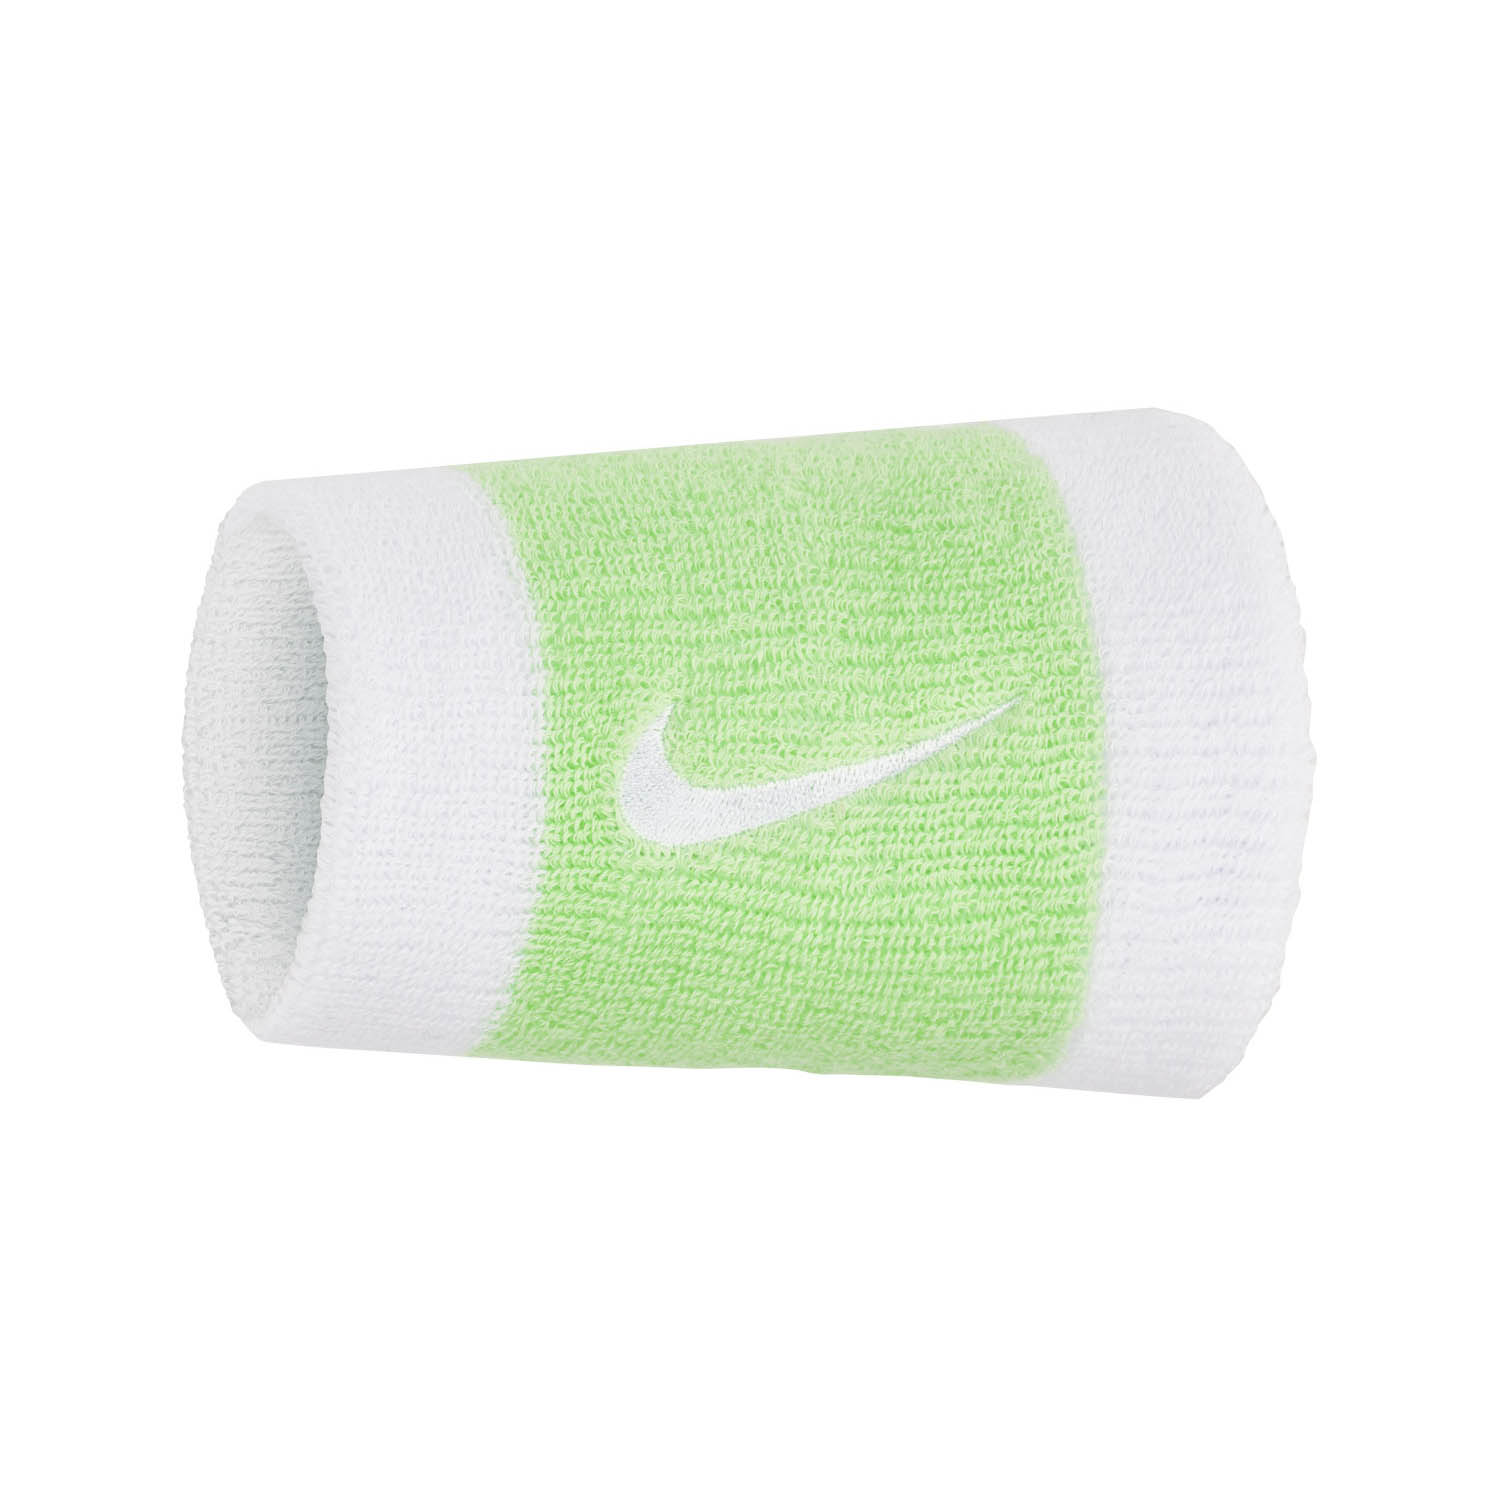 Nike Premier Polsini Lunghi - White/Vapor Green